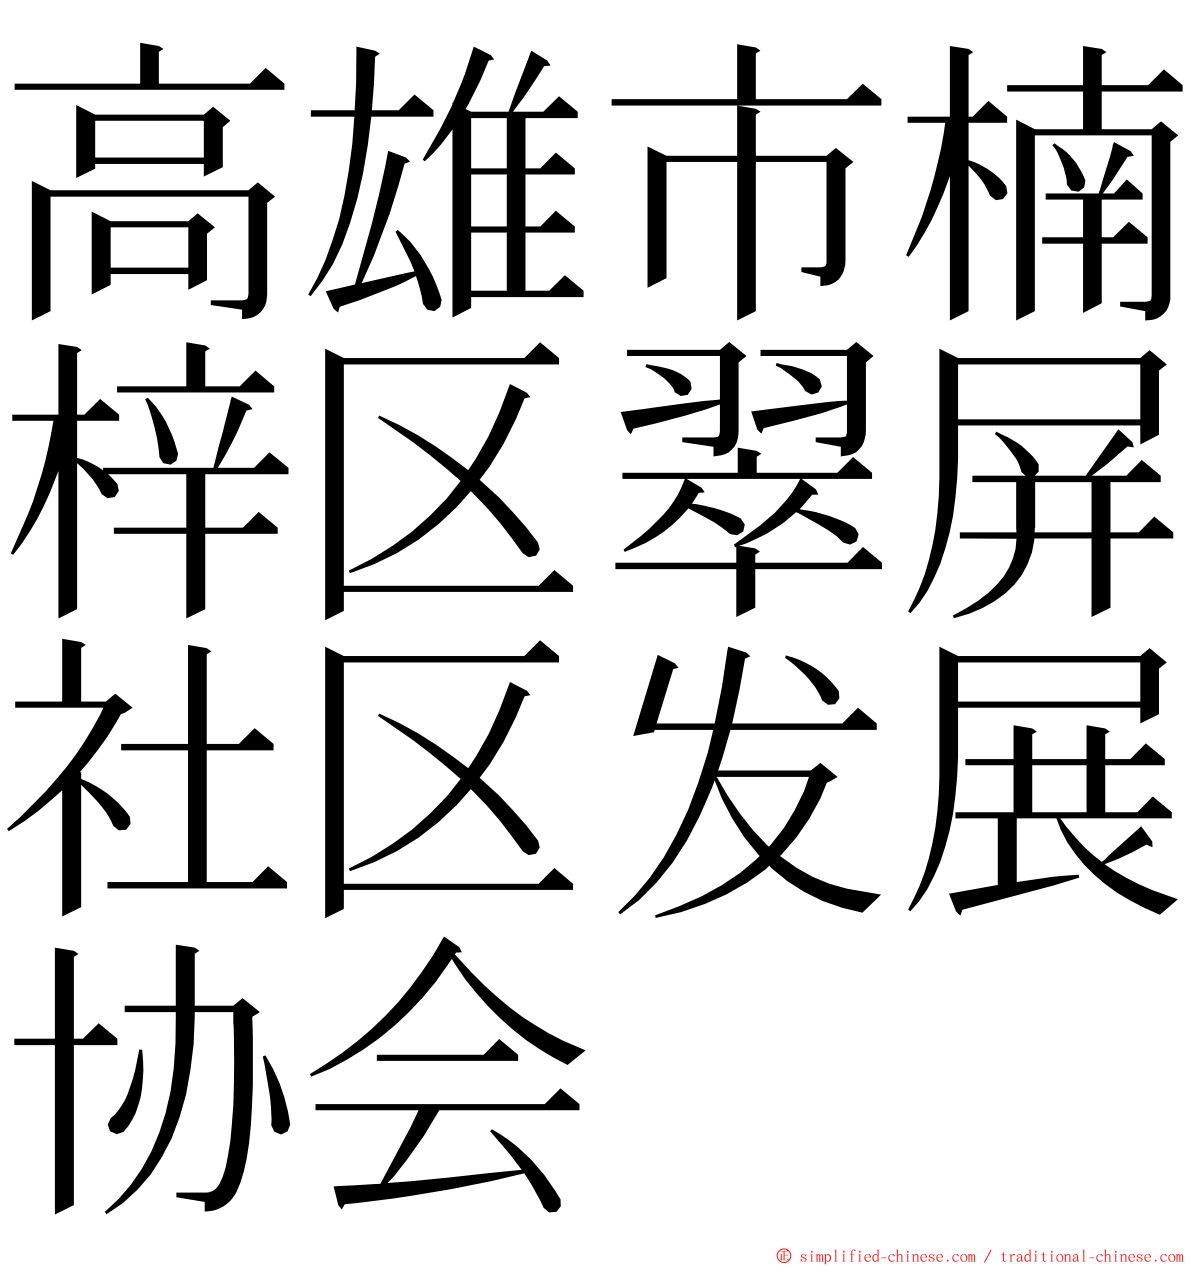 高雄市楠梓区翠屏社区发展协会 ming font